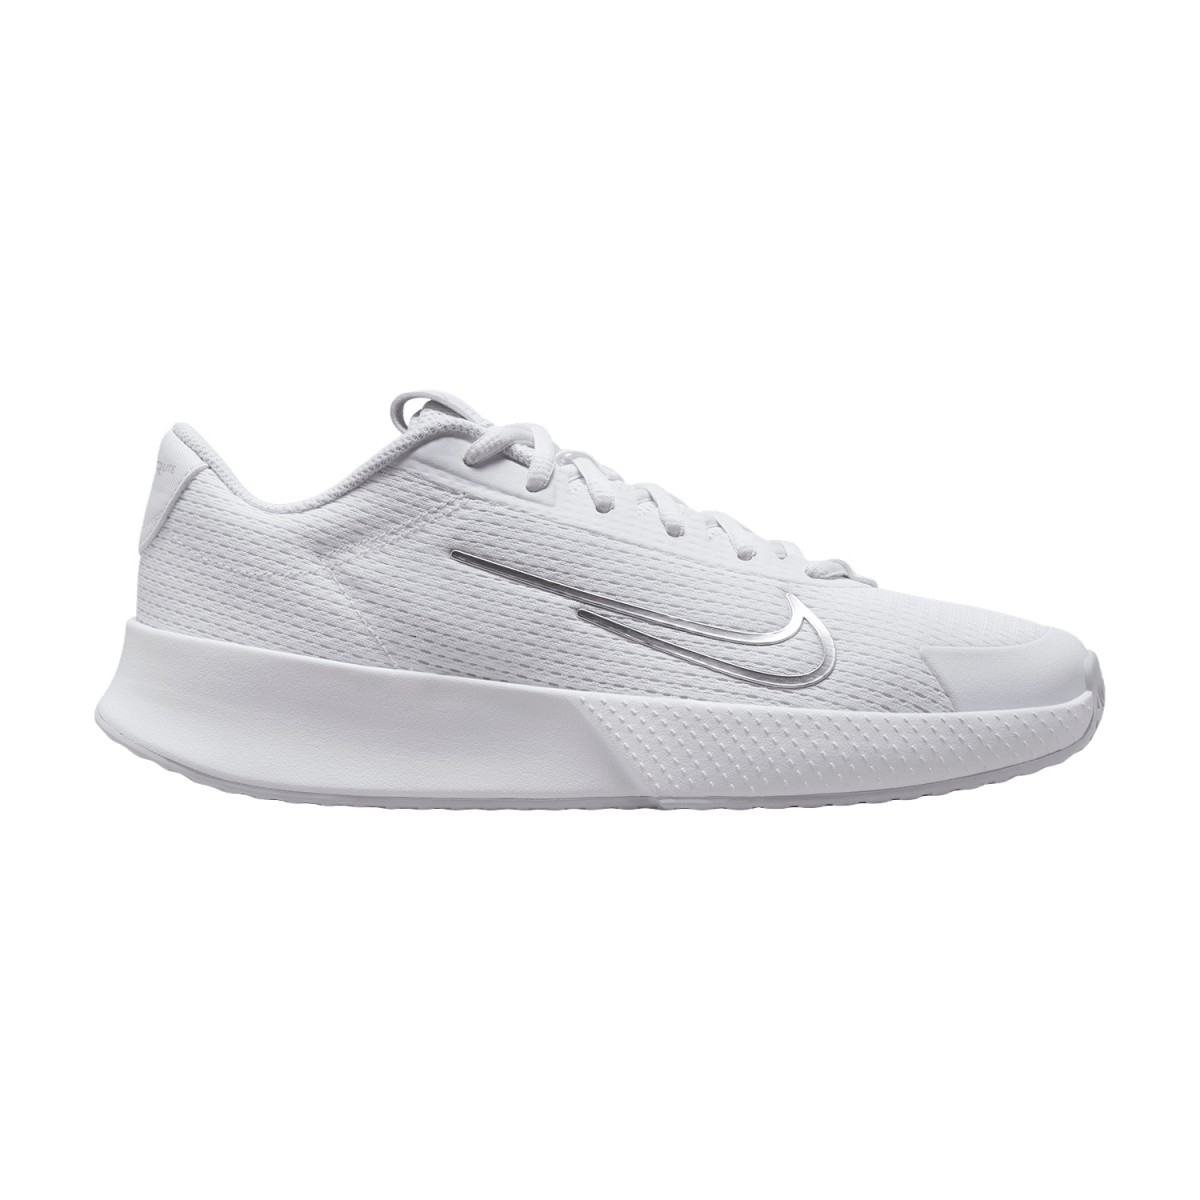 Теннисные кроссовки женские Nike Vapor Lite 2 white/metallic silver/pure platinum